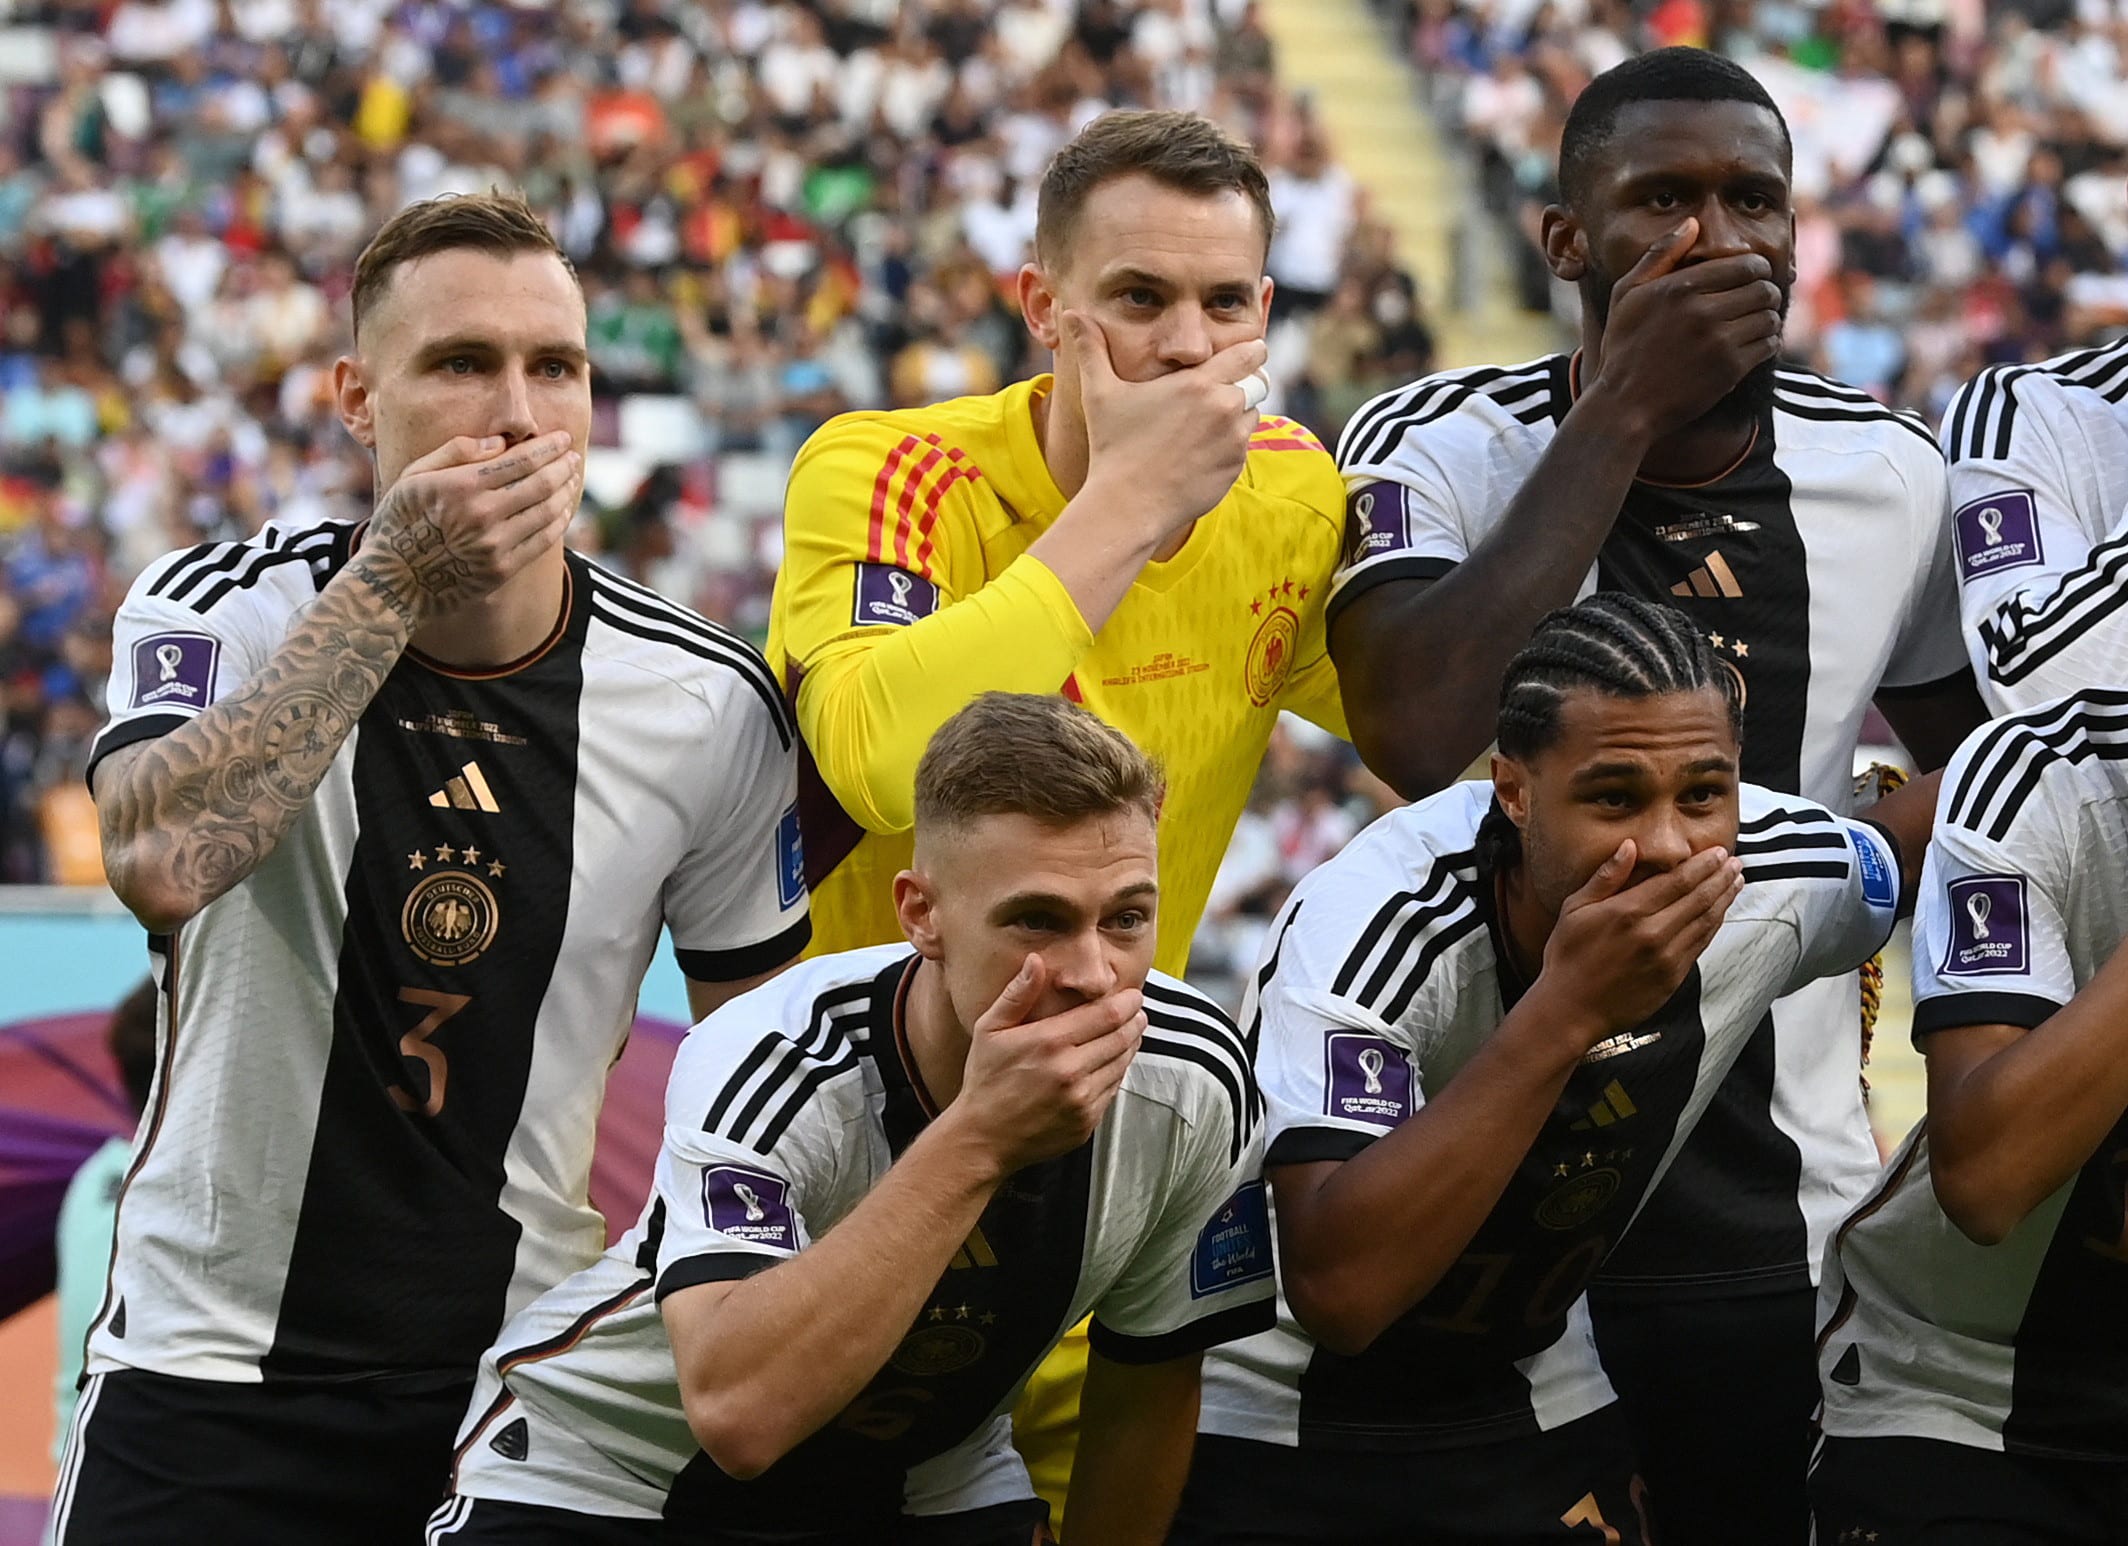 שחקני נבחרת גרמניה סותמים פיות, מונדיאל 2022